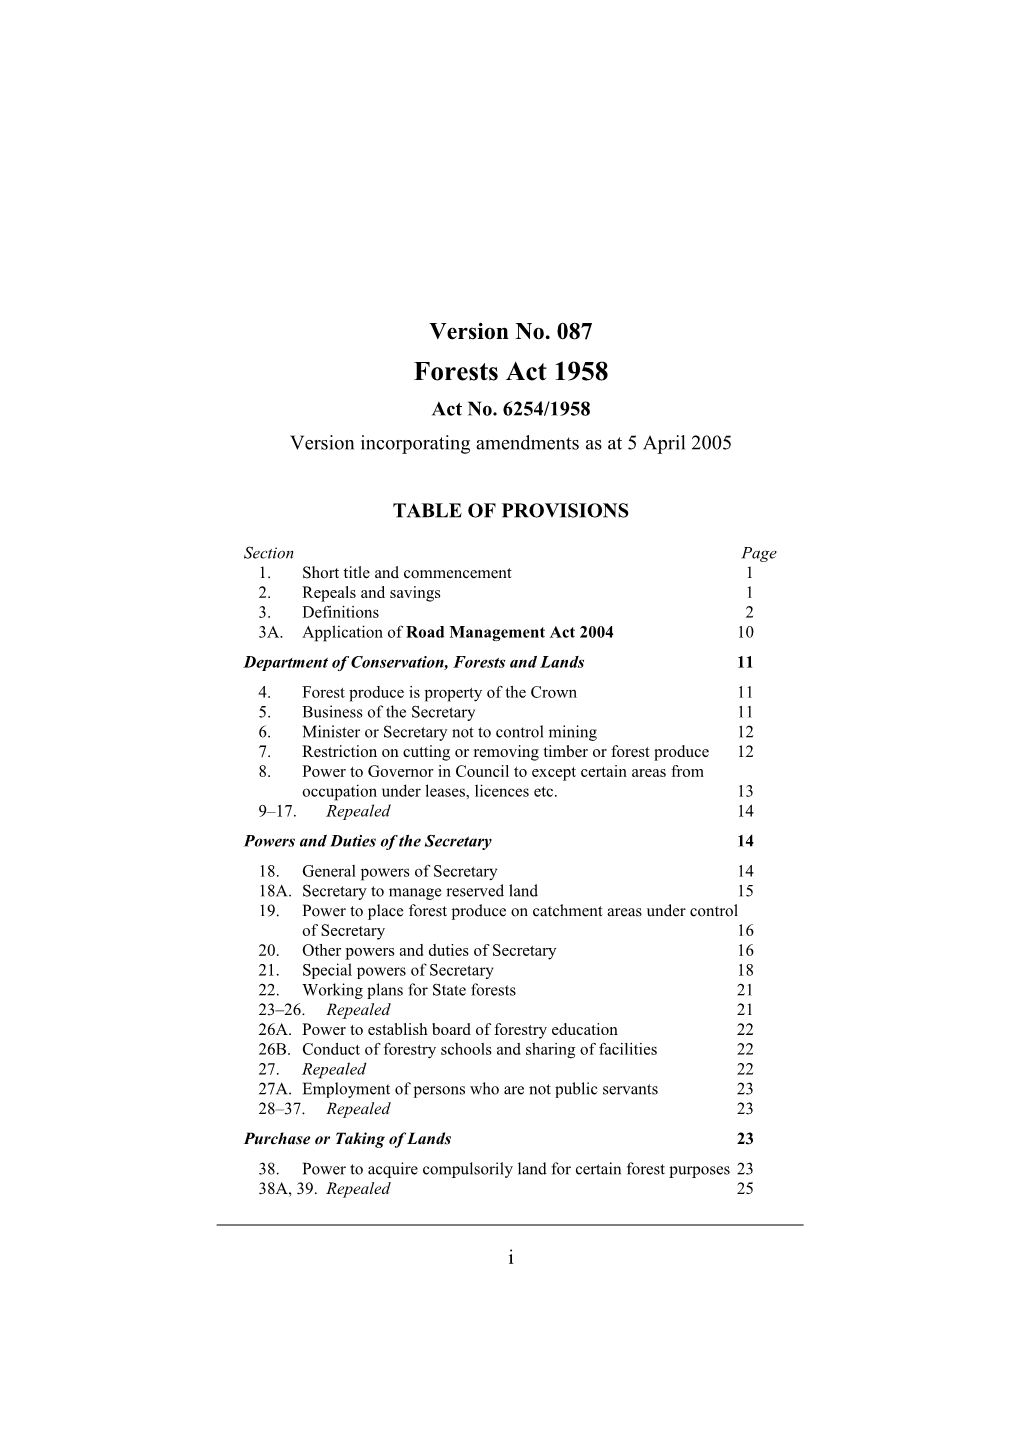 Version Incorporating Amendments As at 5 April 2005